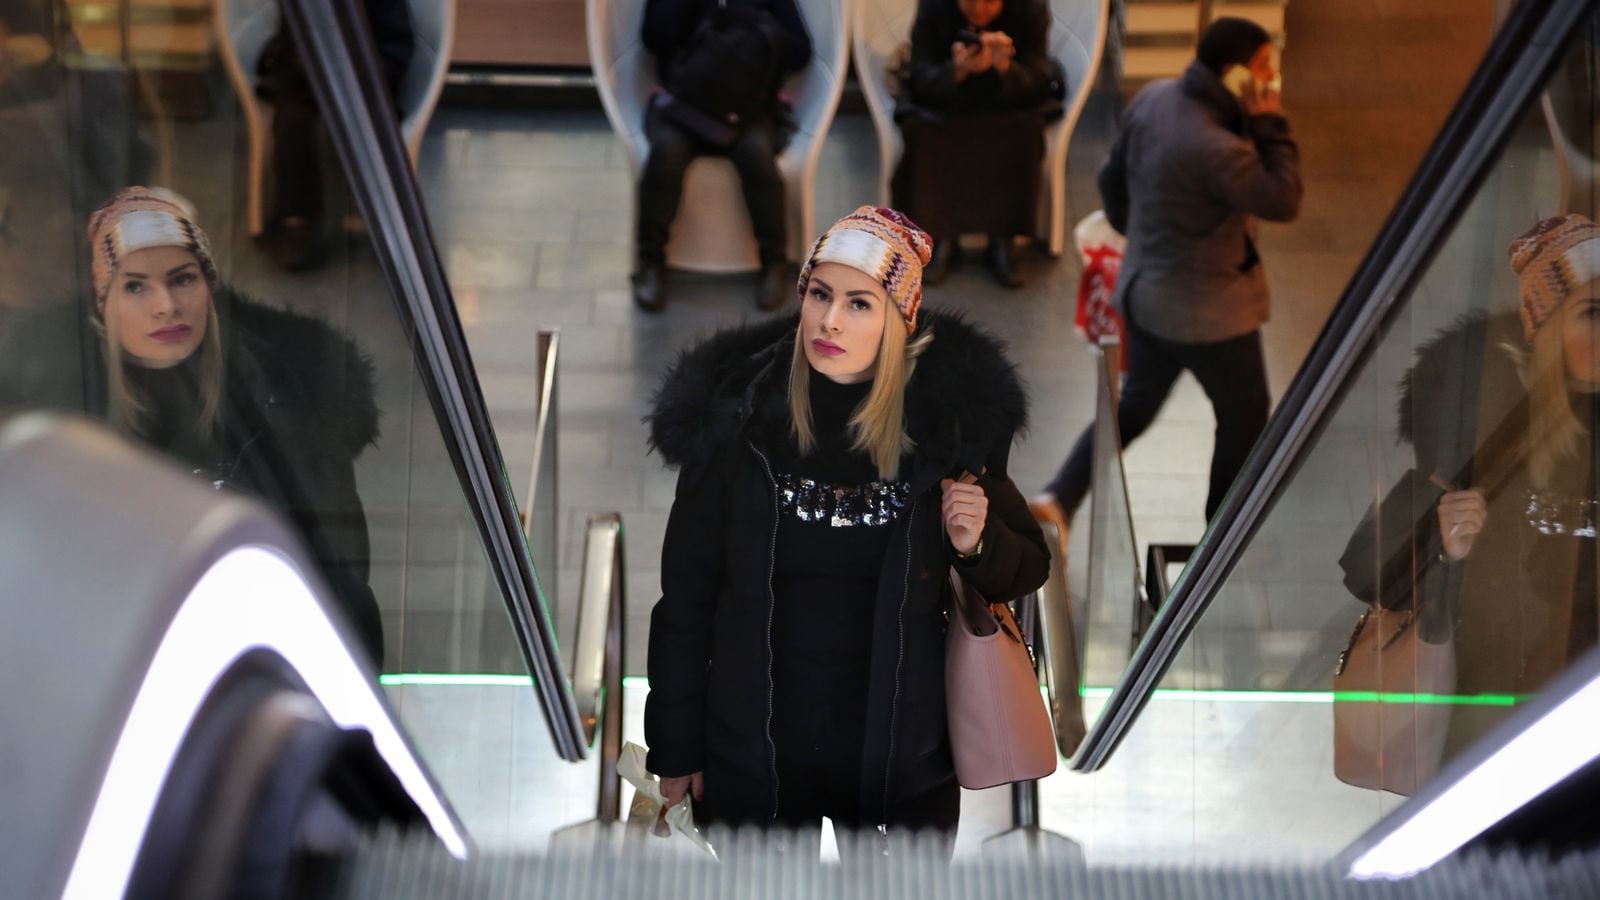 En ung kvinne kommer opp en rulletrapp på et kjøpesenter. Hun har vinterkær på seg og ser litt betenkt ut.